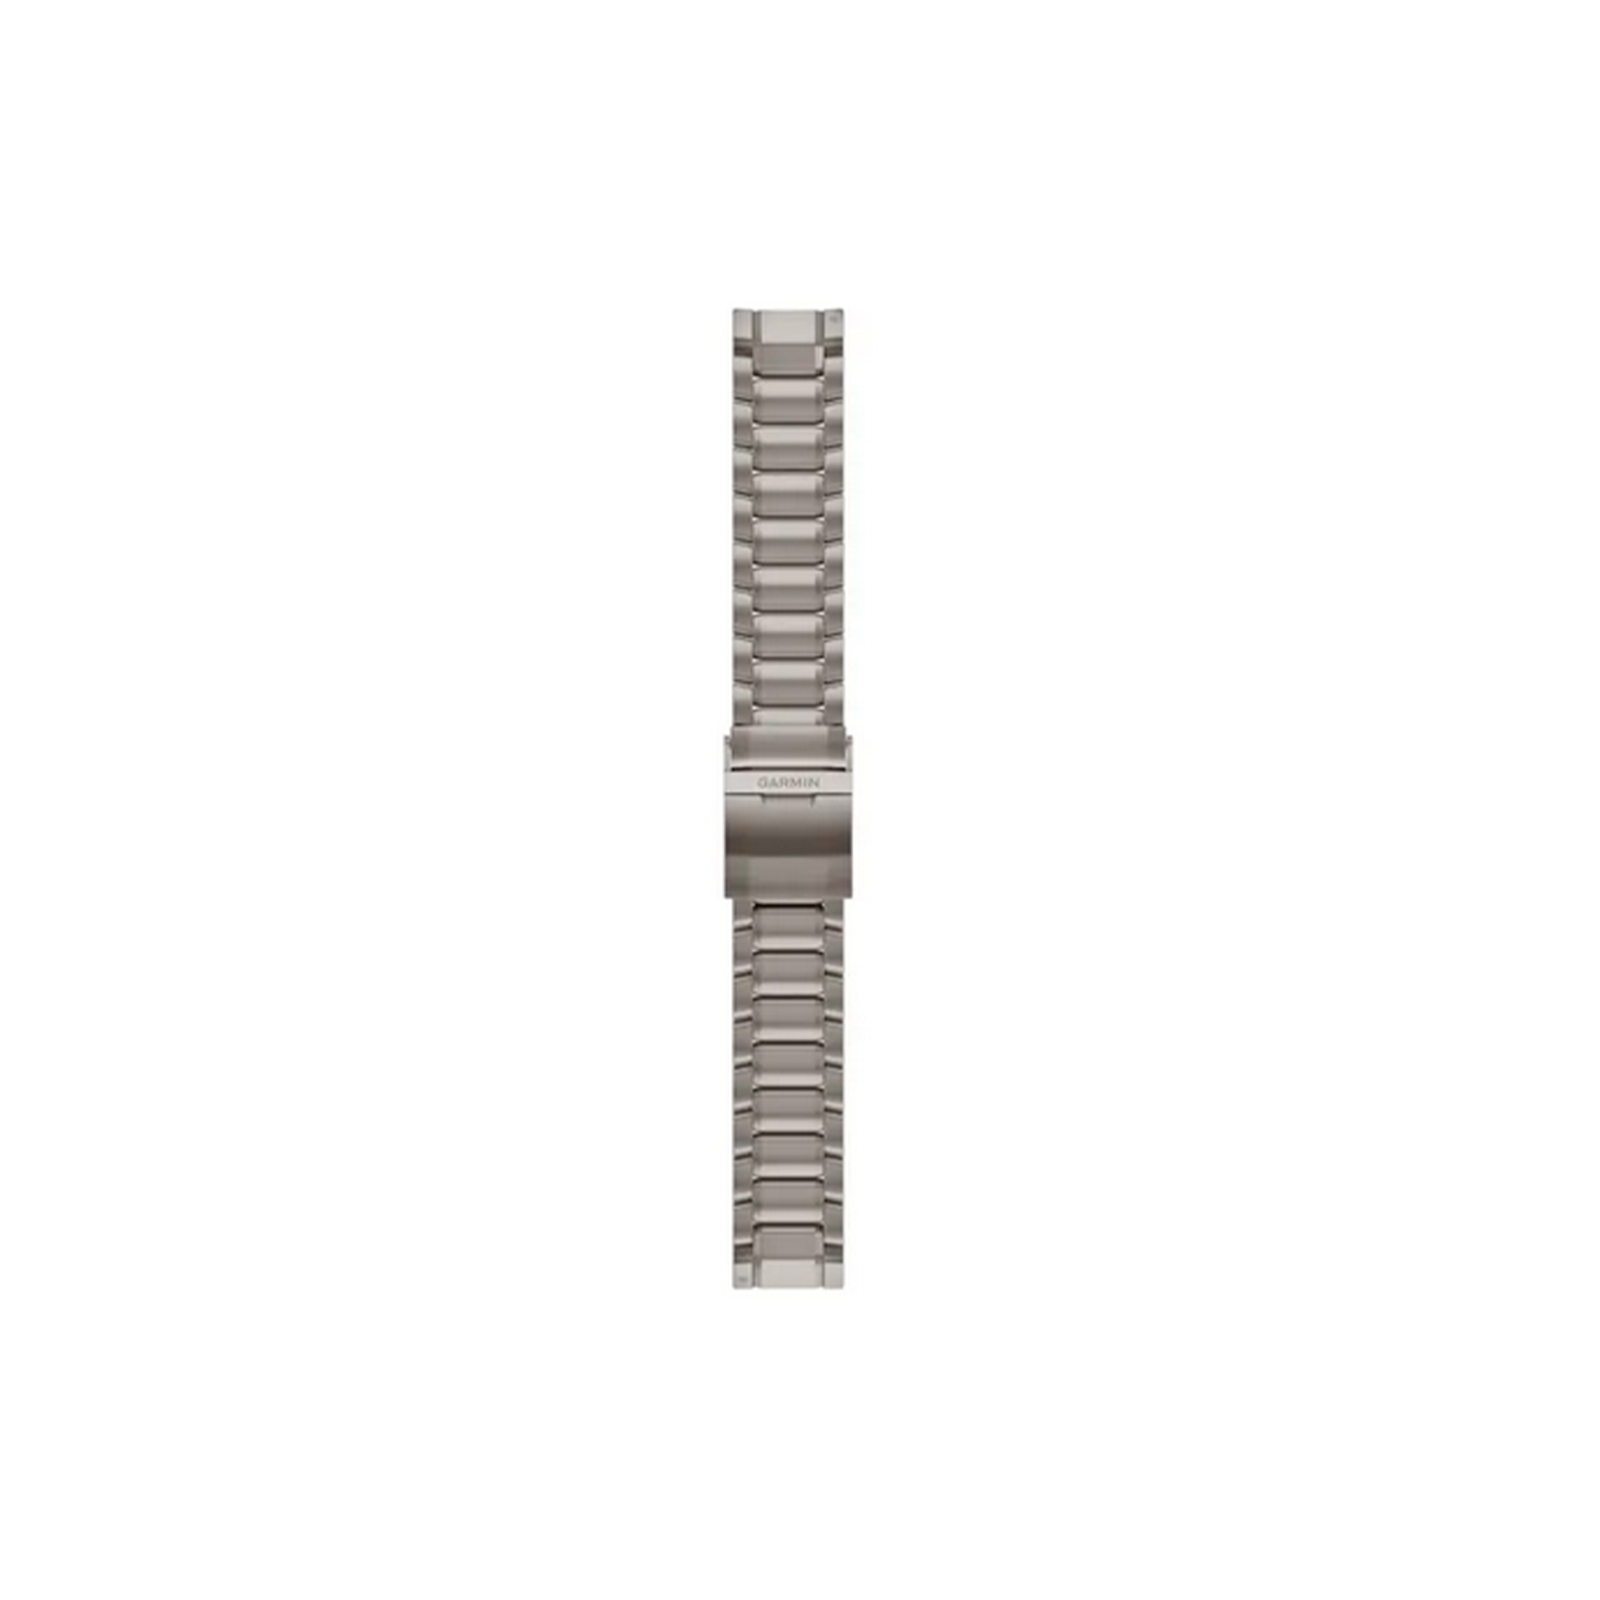 Ремешок для смарт-часов Garmin MARQ GEN2, QF 22, Swept-Link PVD Titanium Bracelet (010-13225-12) изображение 2